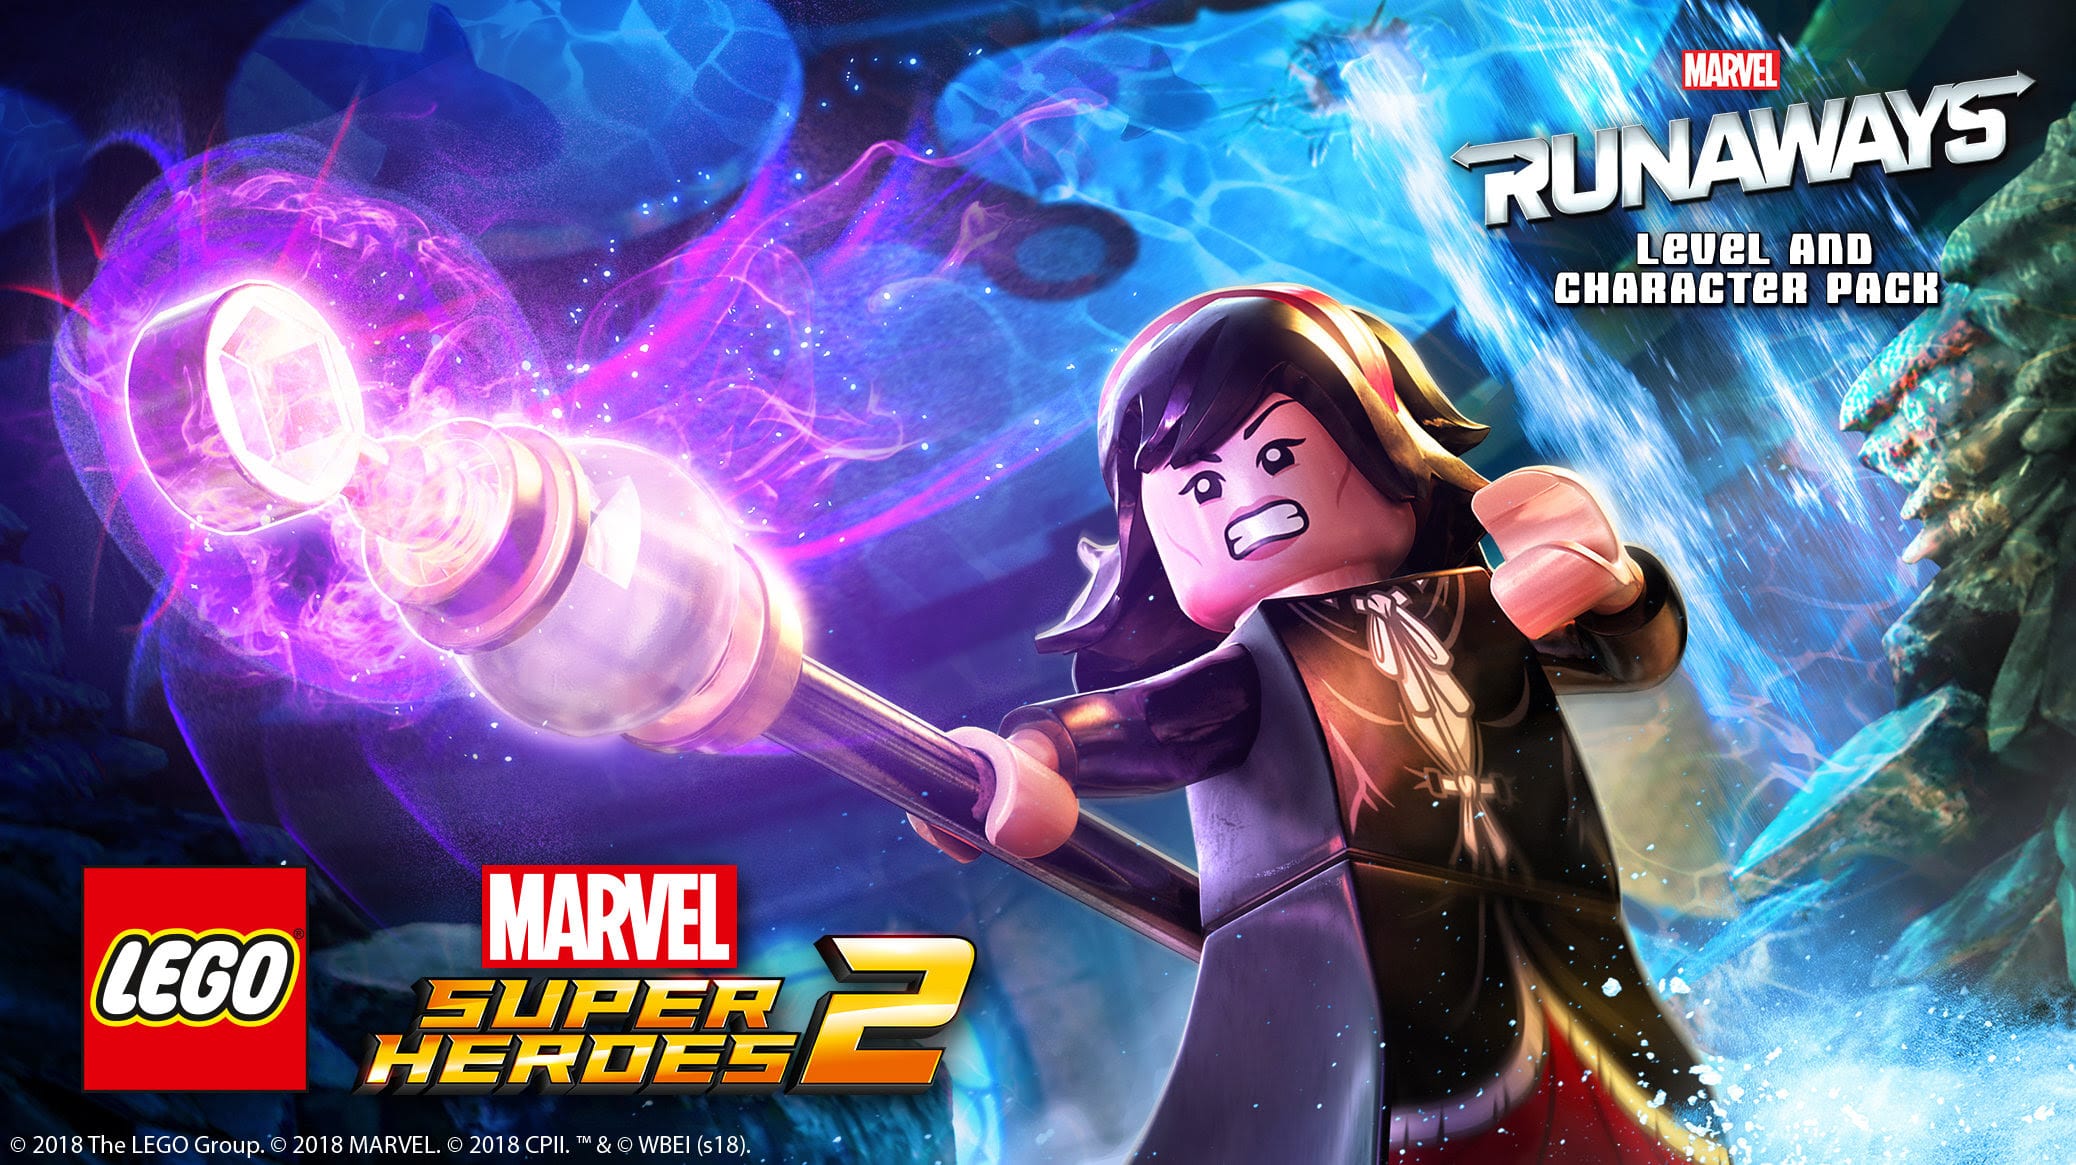 LEGO Marvel Super Heroes 2 Agrega paquetes de descarga -Runaways-GamersRD